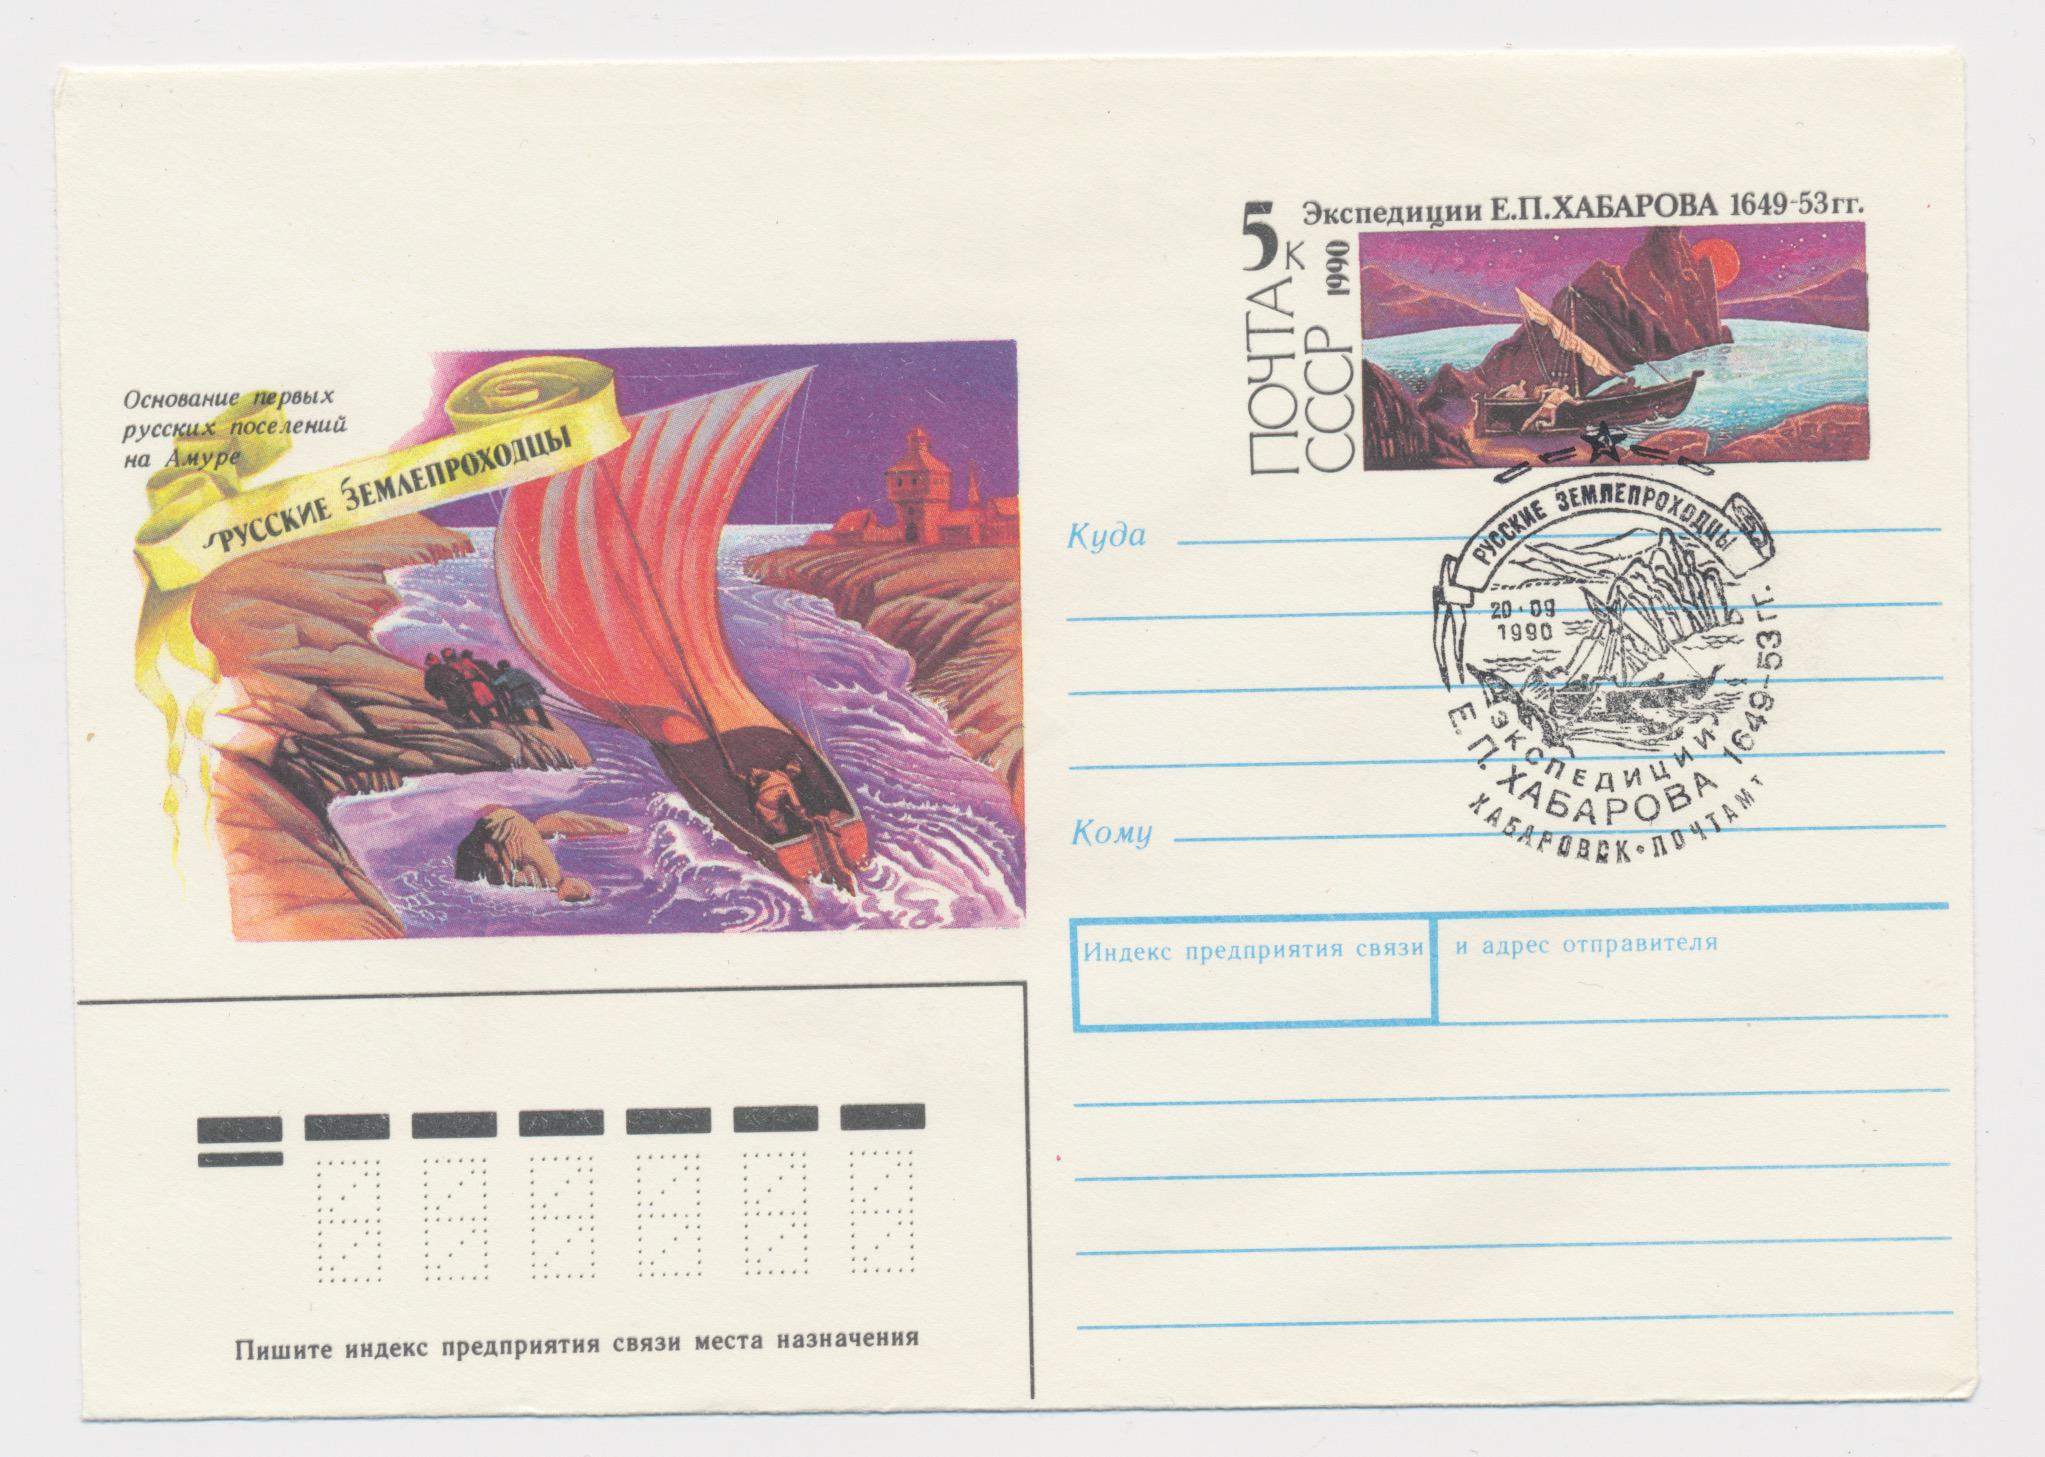 1649 5. Художественный маркированный конверт с оригинальной маркой. Конверт с маркой из сказки. Почтовая карточка Арктика. Почтовые марки Дальний Восток.